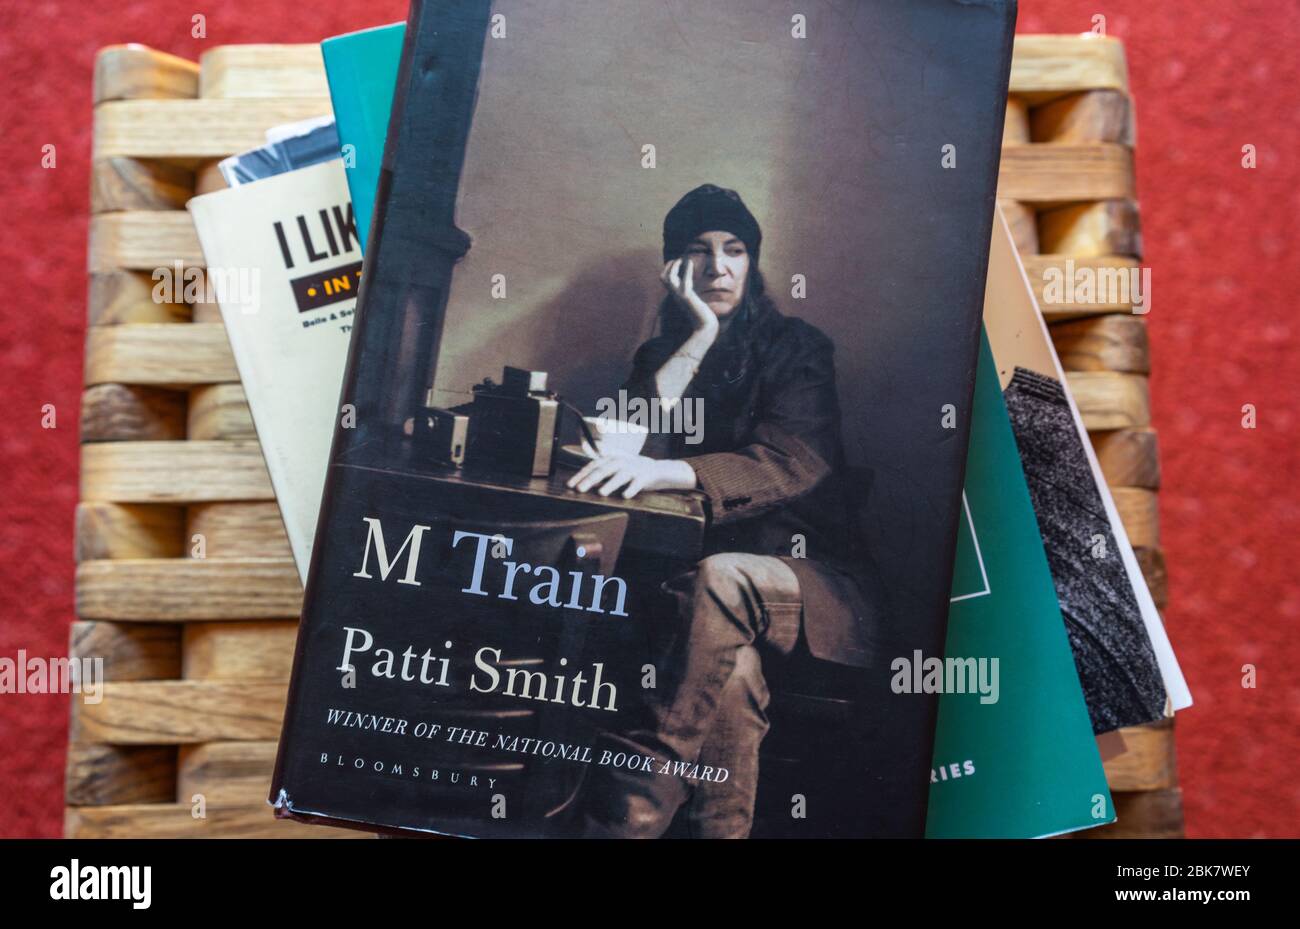 Une copie de M train A memoir de Patty Smith sur une pile de livres Banque D'Images